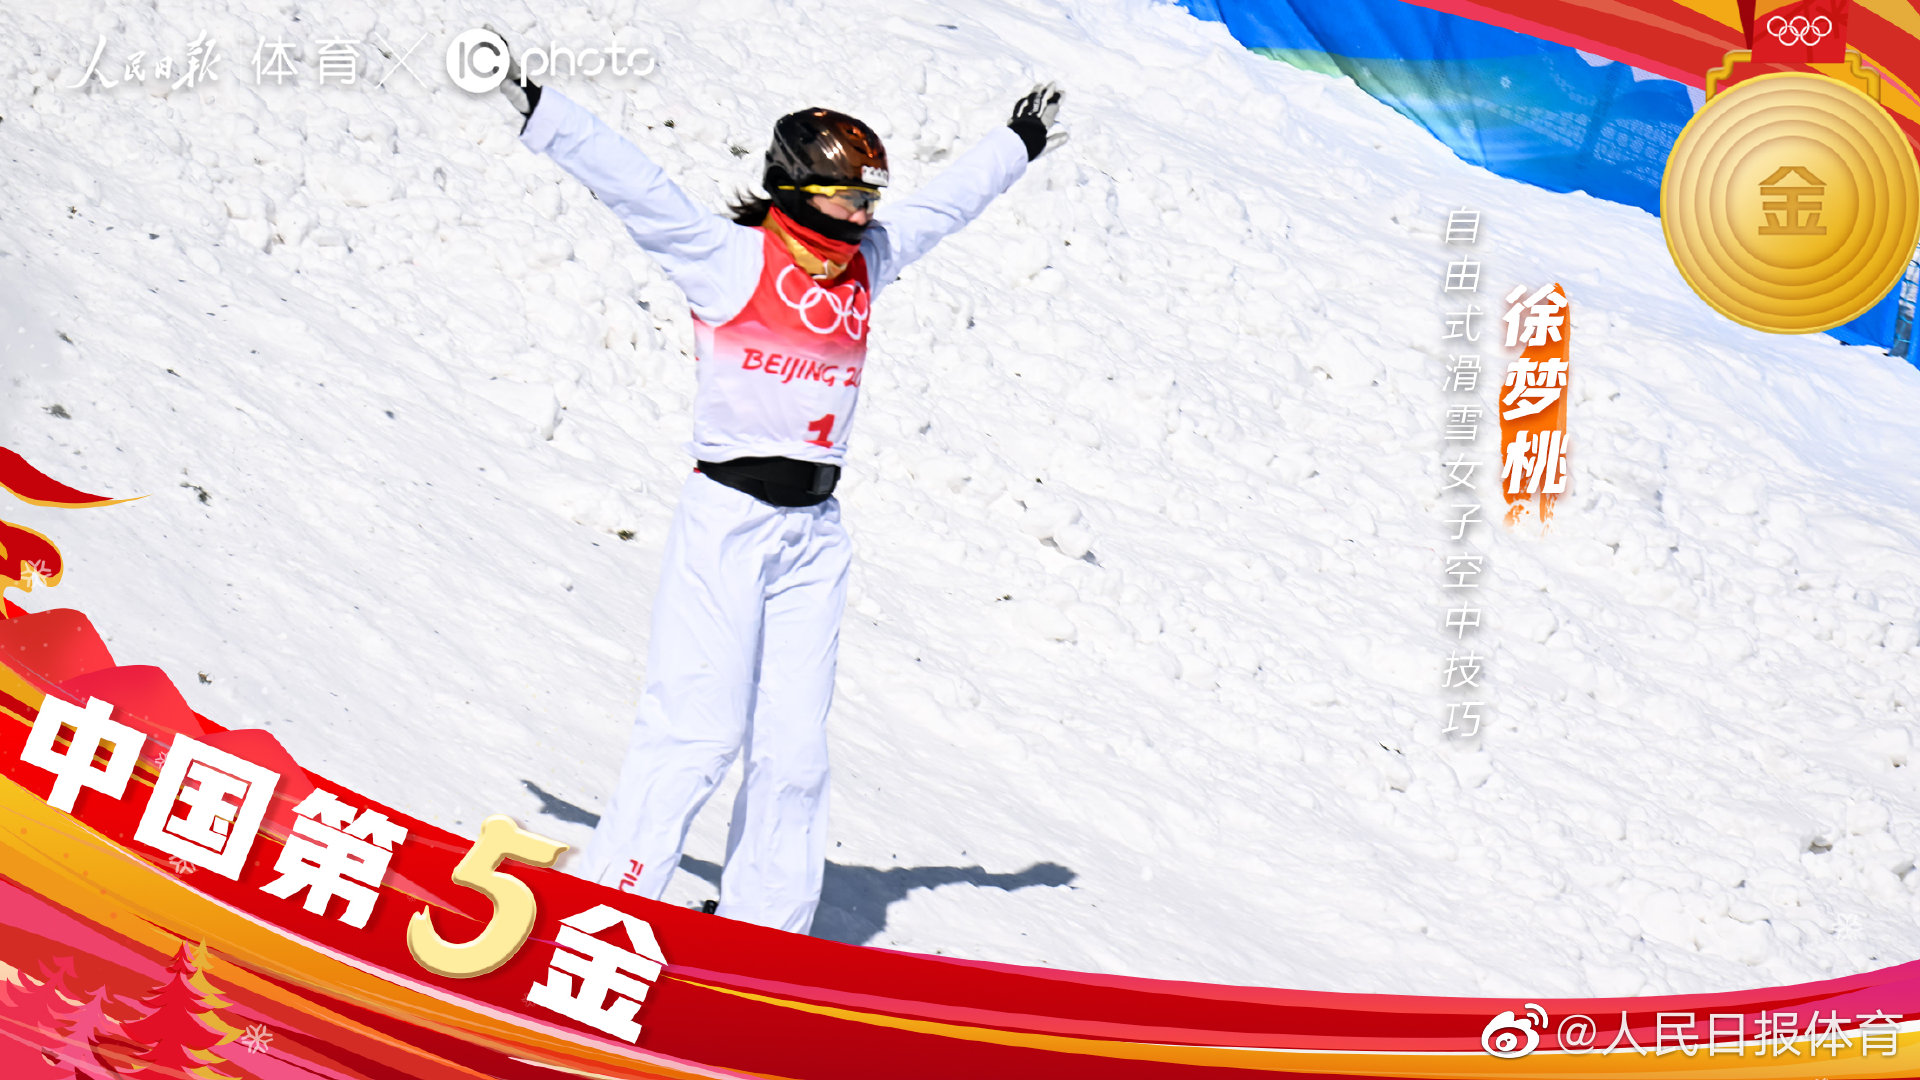 徐梦桃自由式滑雪空中技巧夺冠 体育总局致贺信